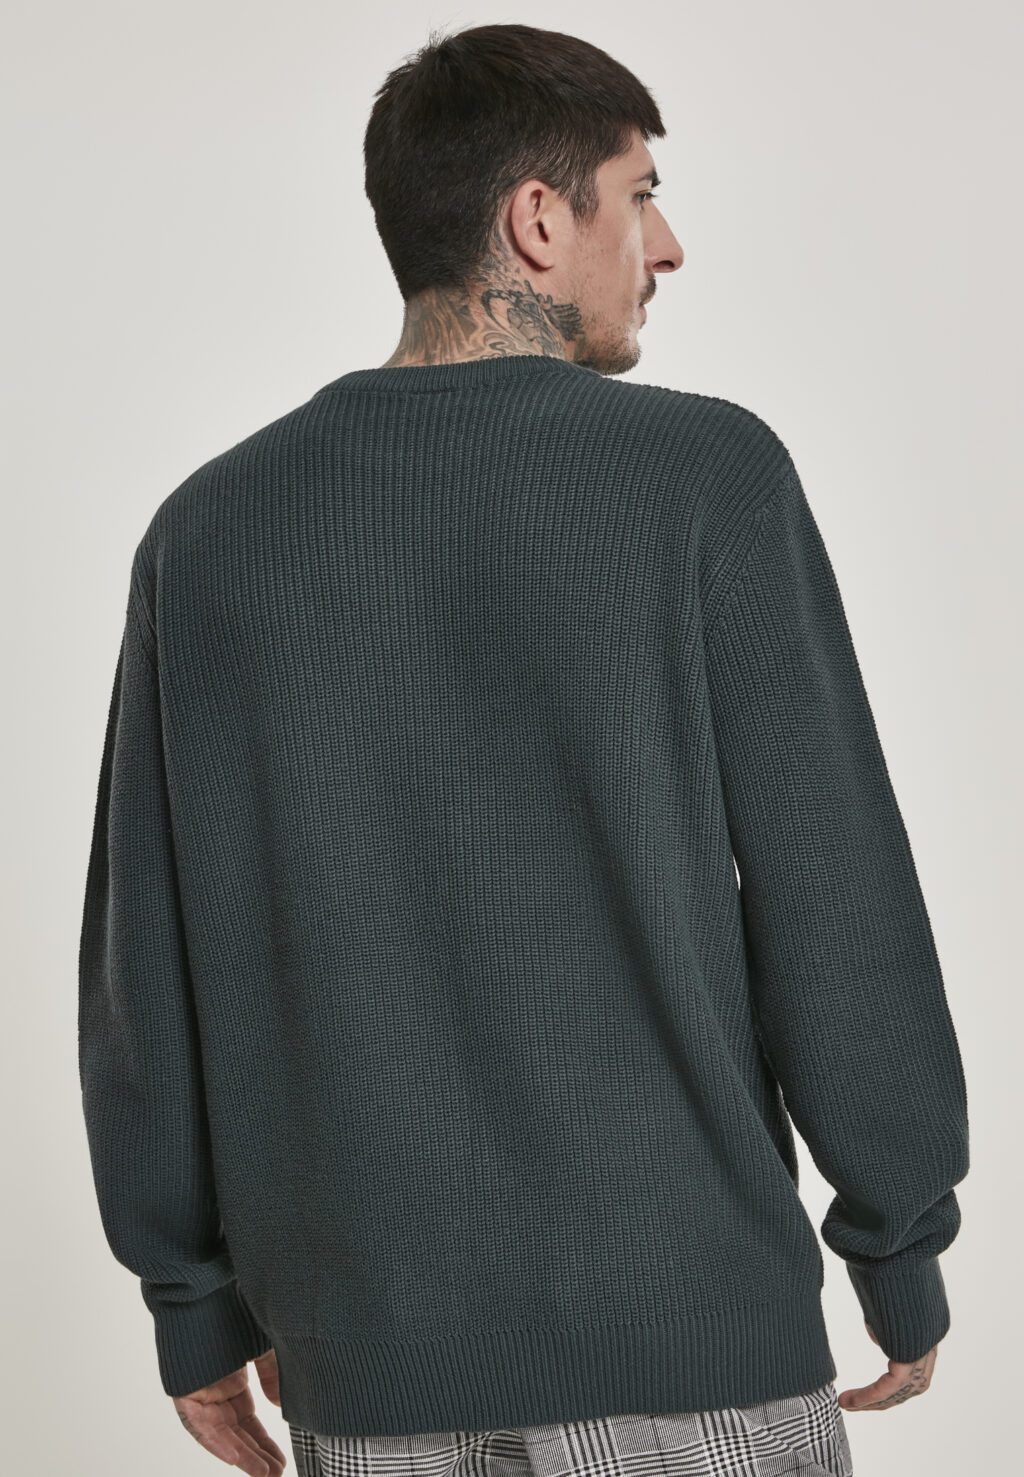 Urban Classics Cardigan Stitch Sweater bottlegreen TB3129